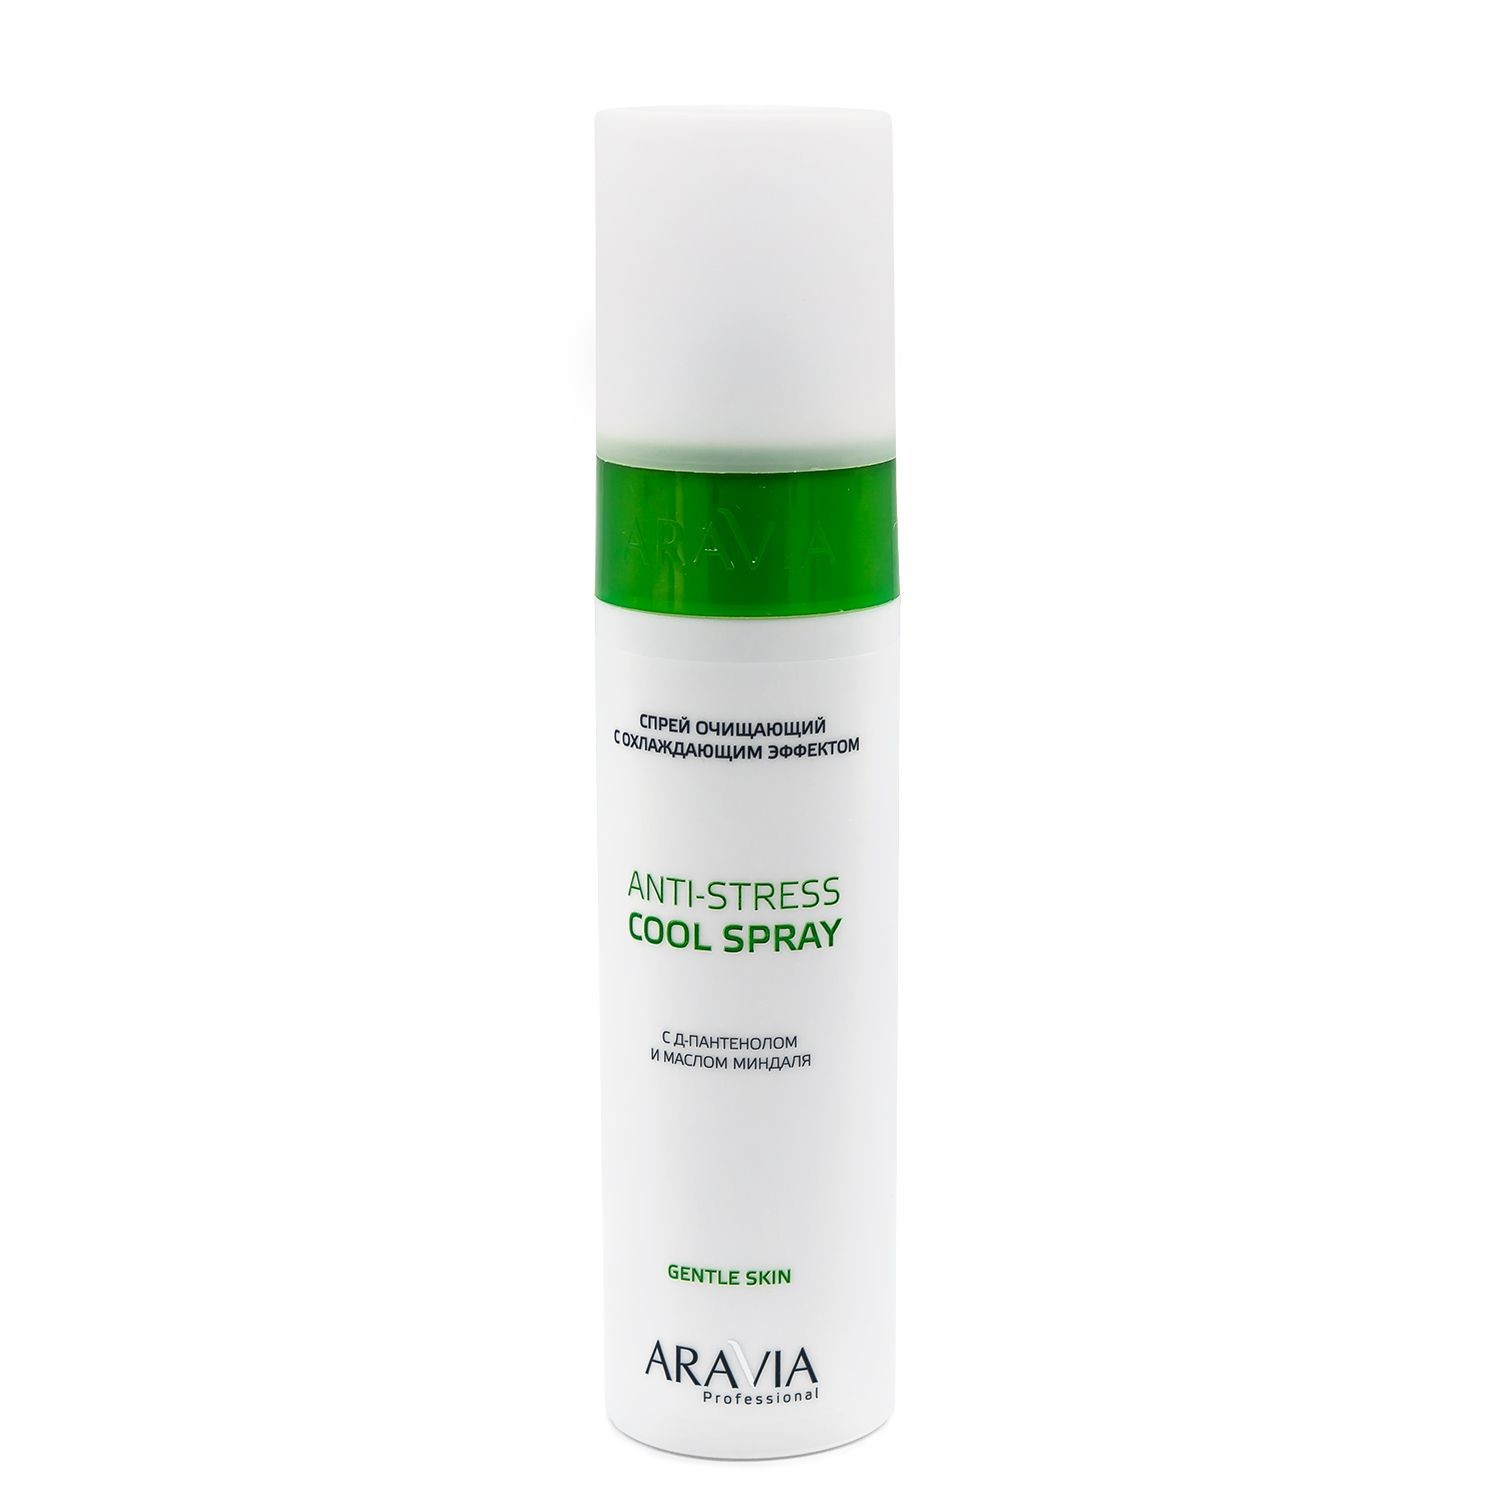 Спрей очищающий с охлаждающим эффектом Anti-Stress Cool Spray, 250 мл.